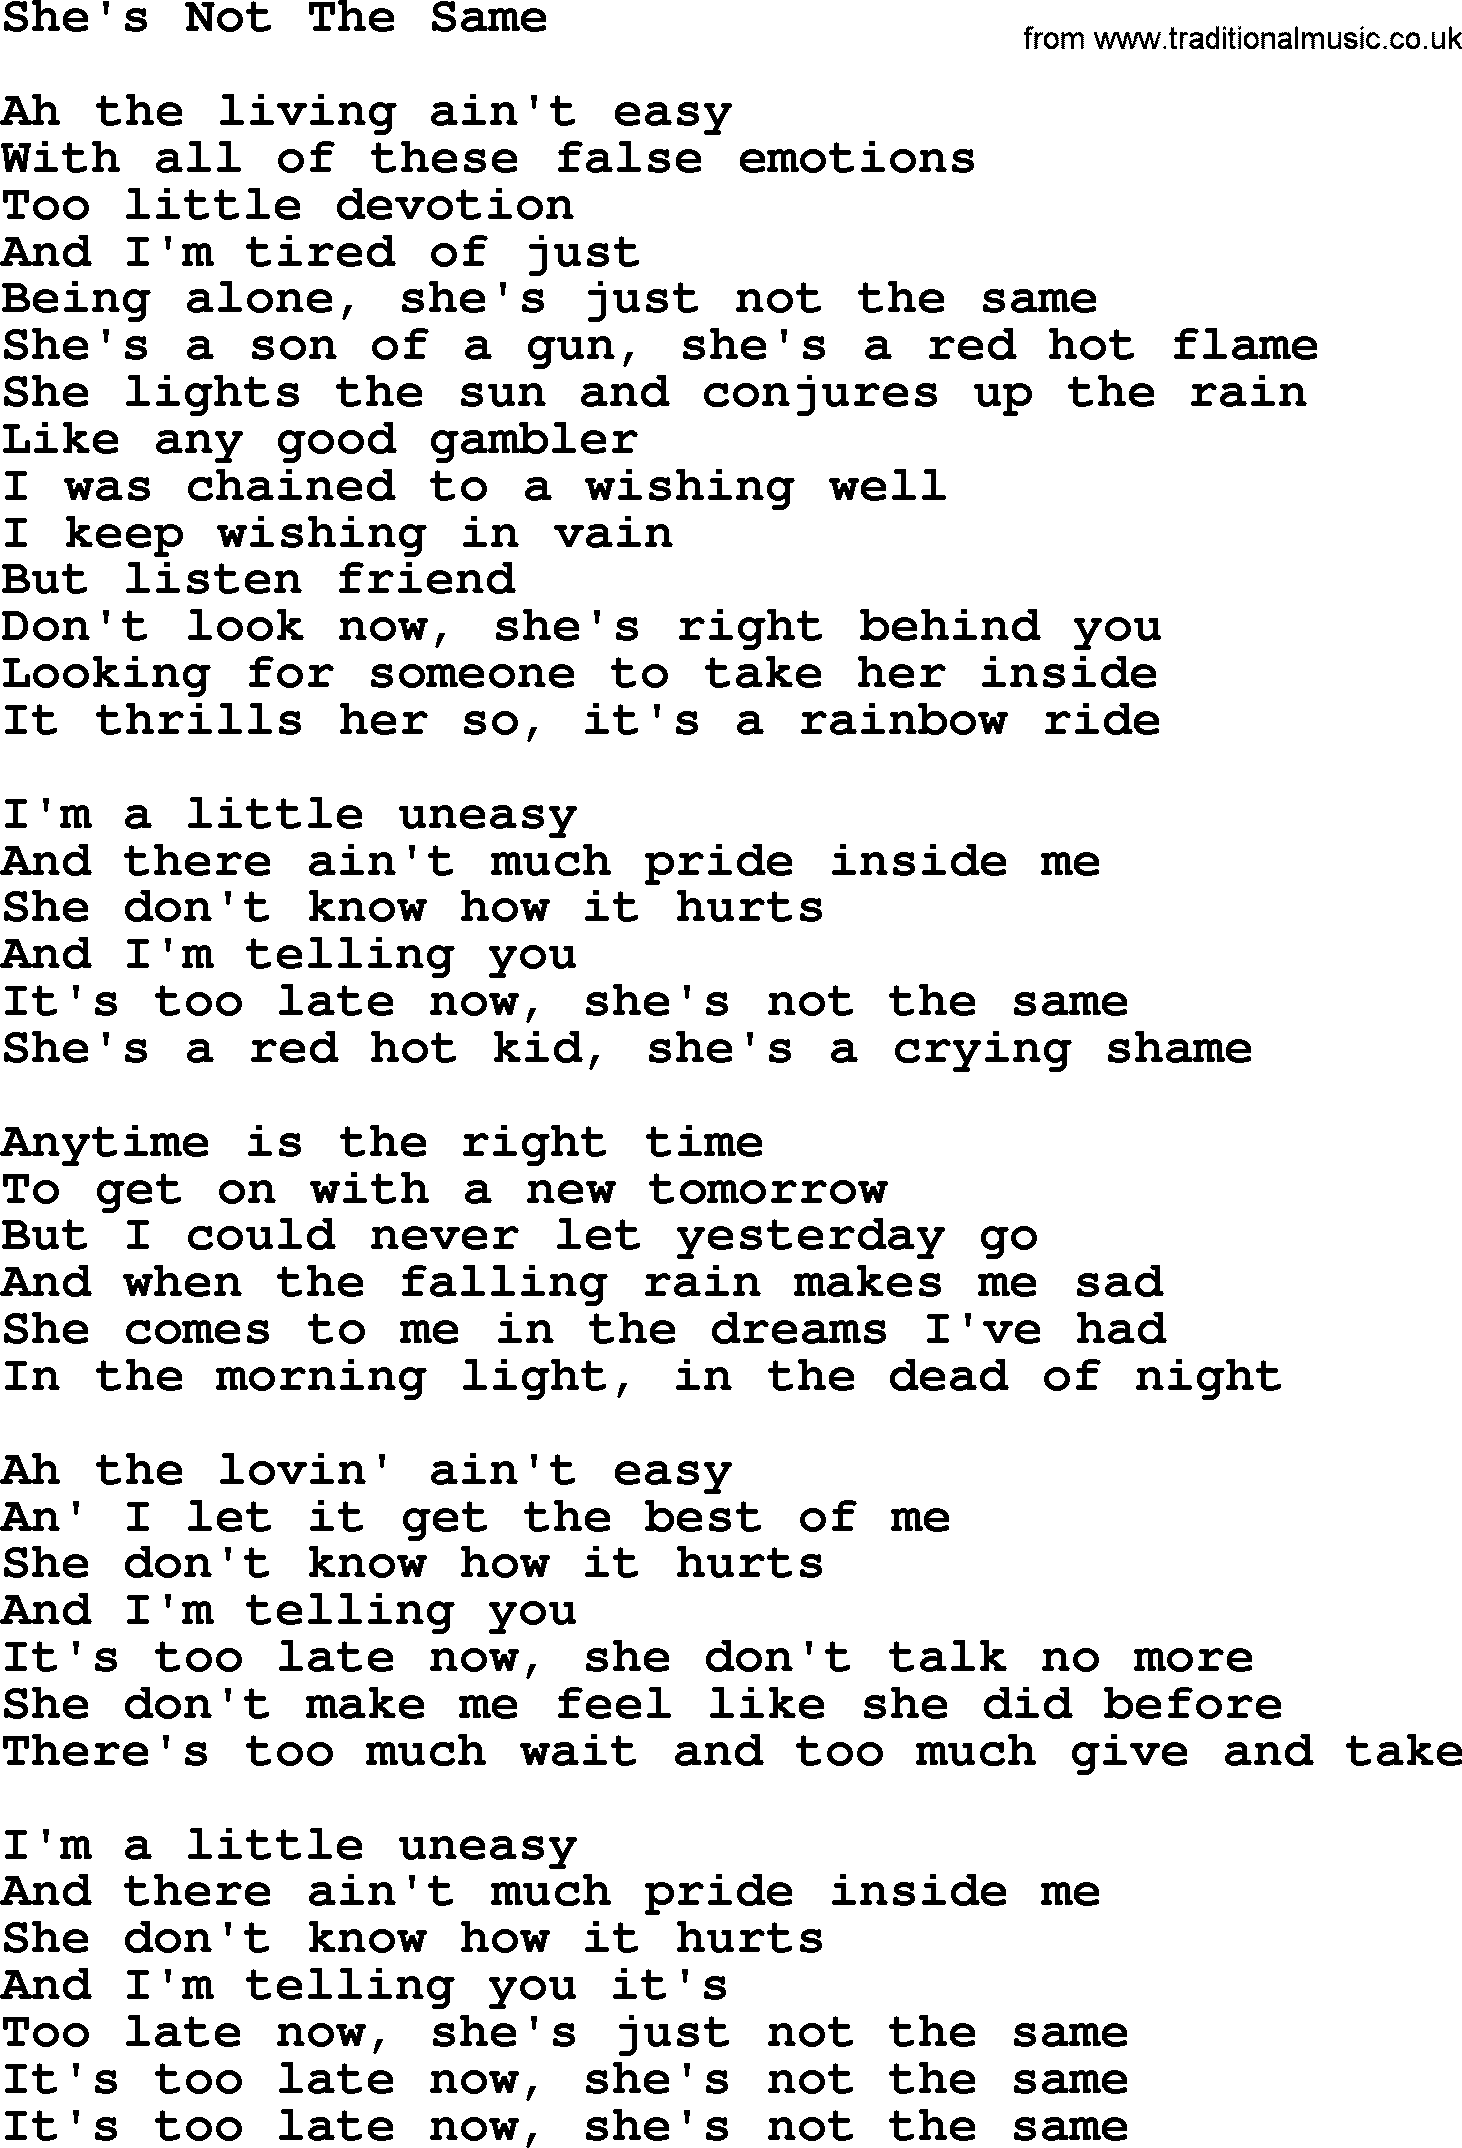 Gordon Lightfoot song She's Not The Same, lyrics